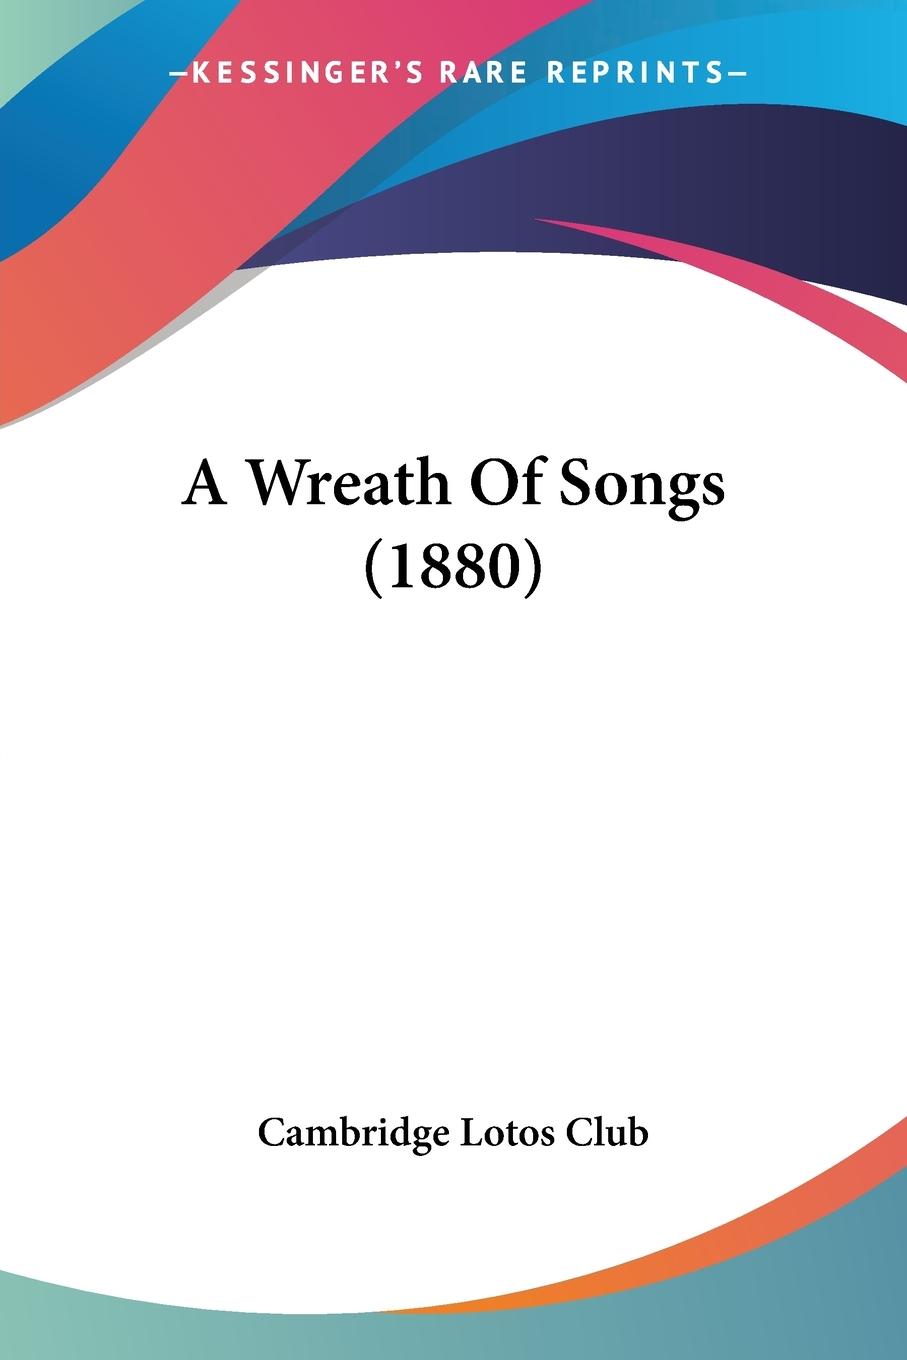 A Wreath Of Songs (1880) - Cambridge Lotos Club